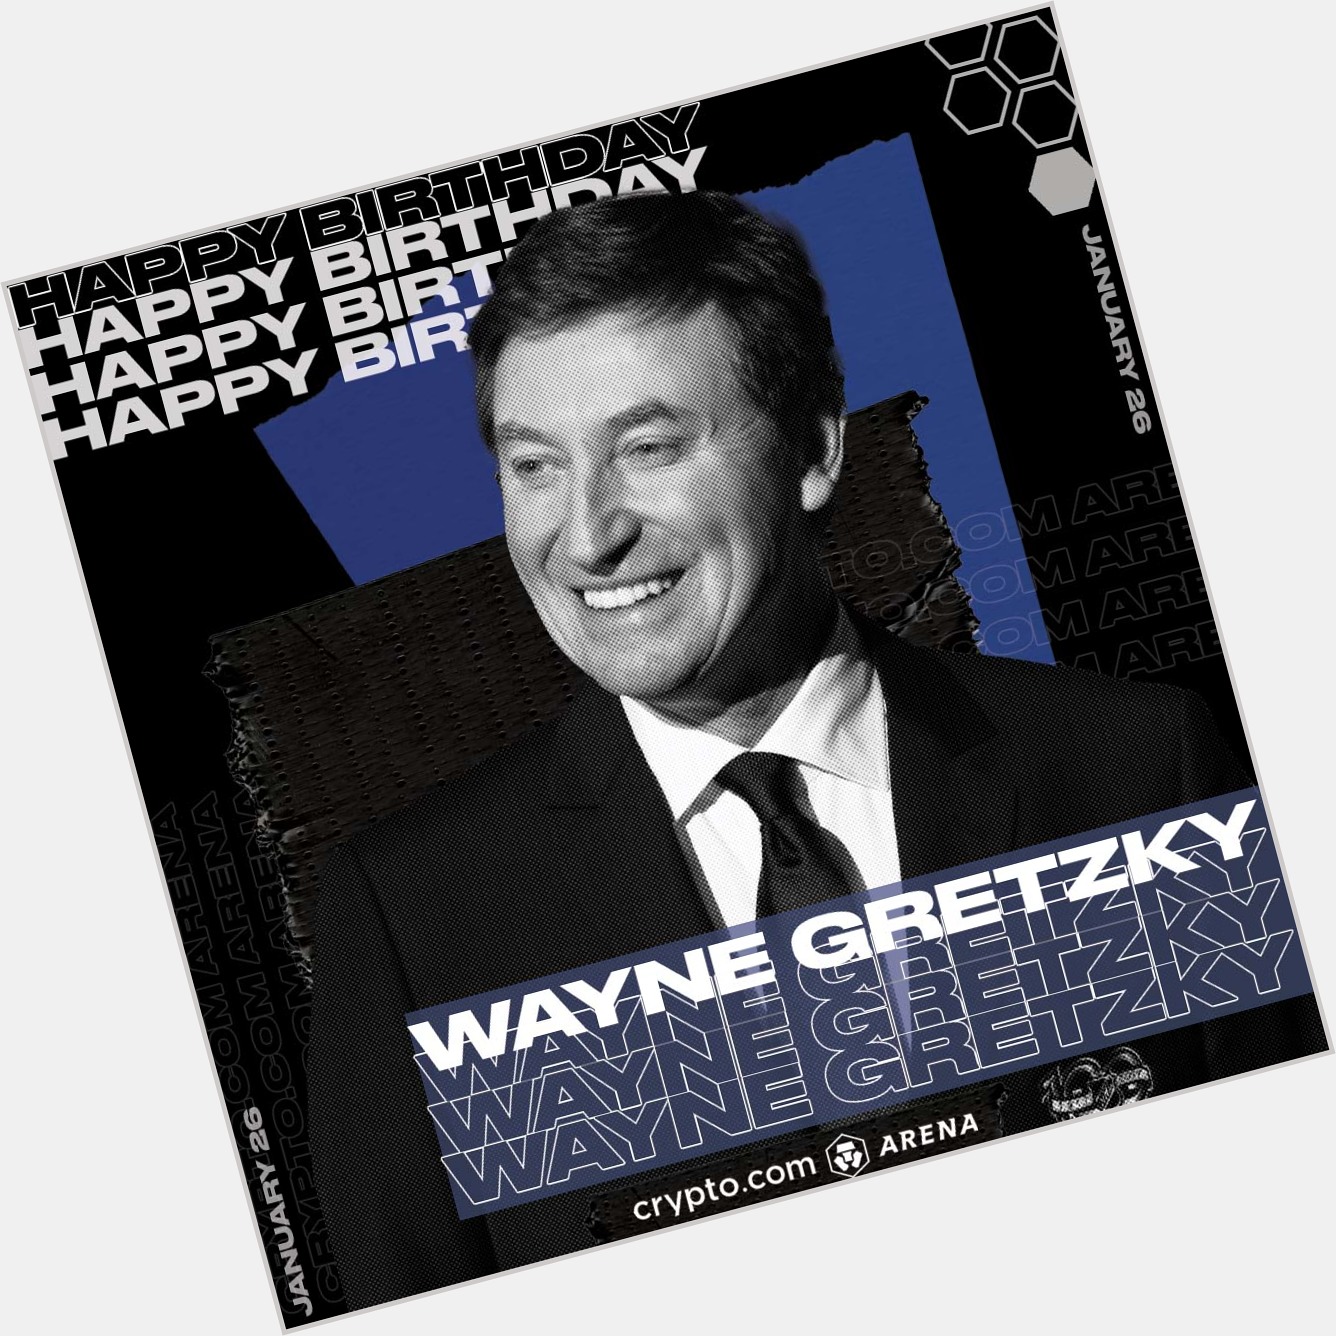 Happy Birthday to The Great One, Wayne Gretzky! 